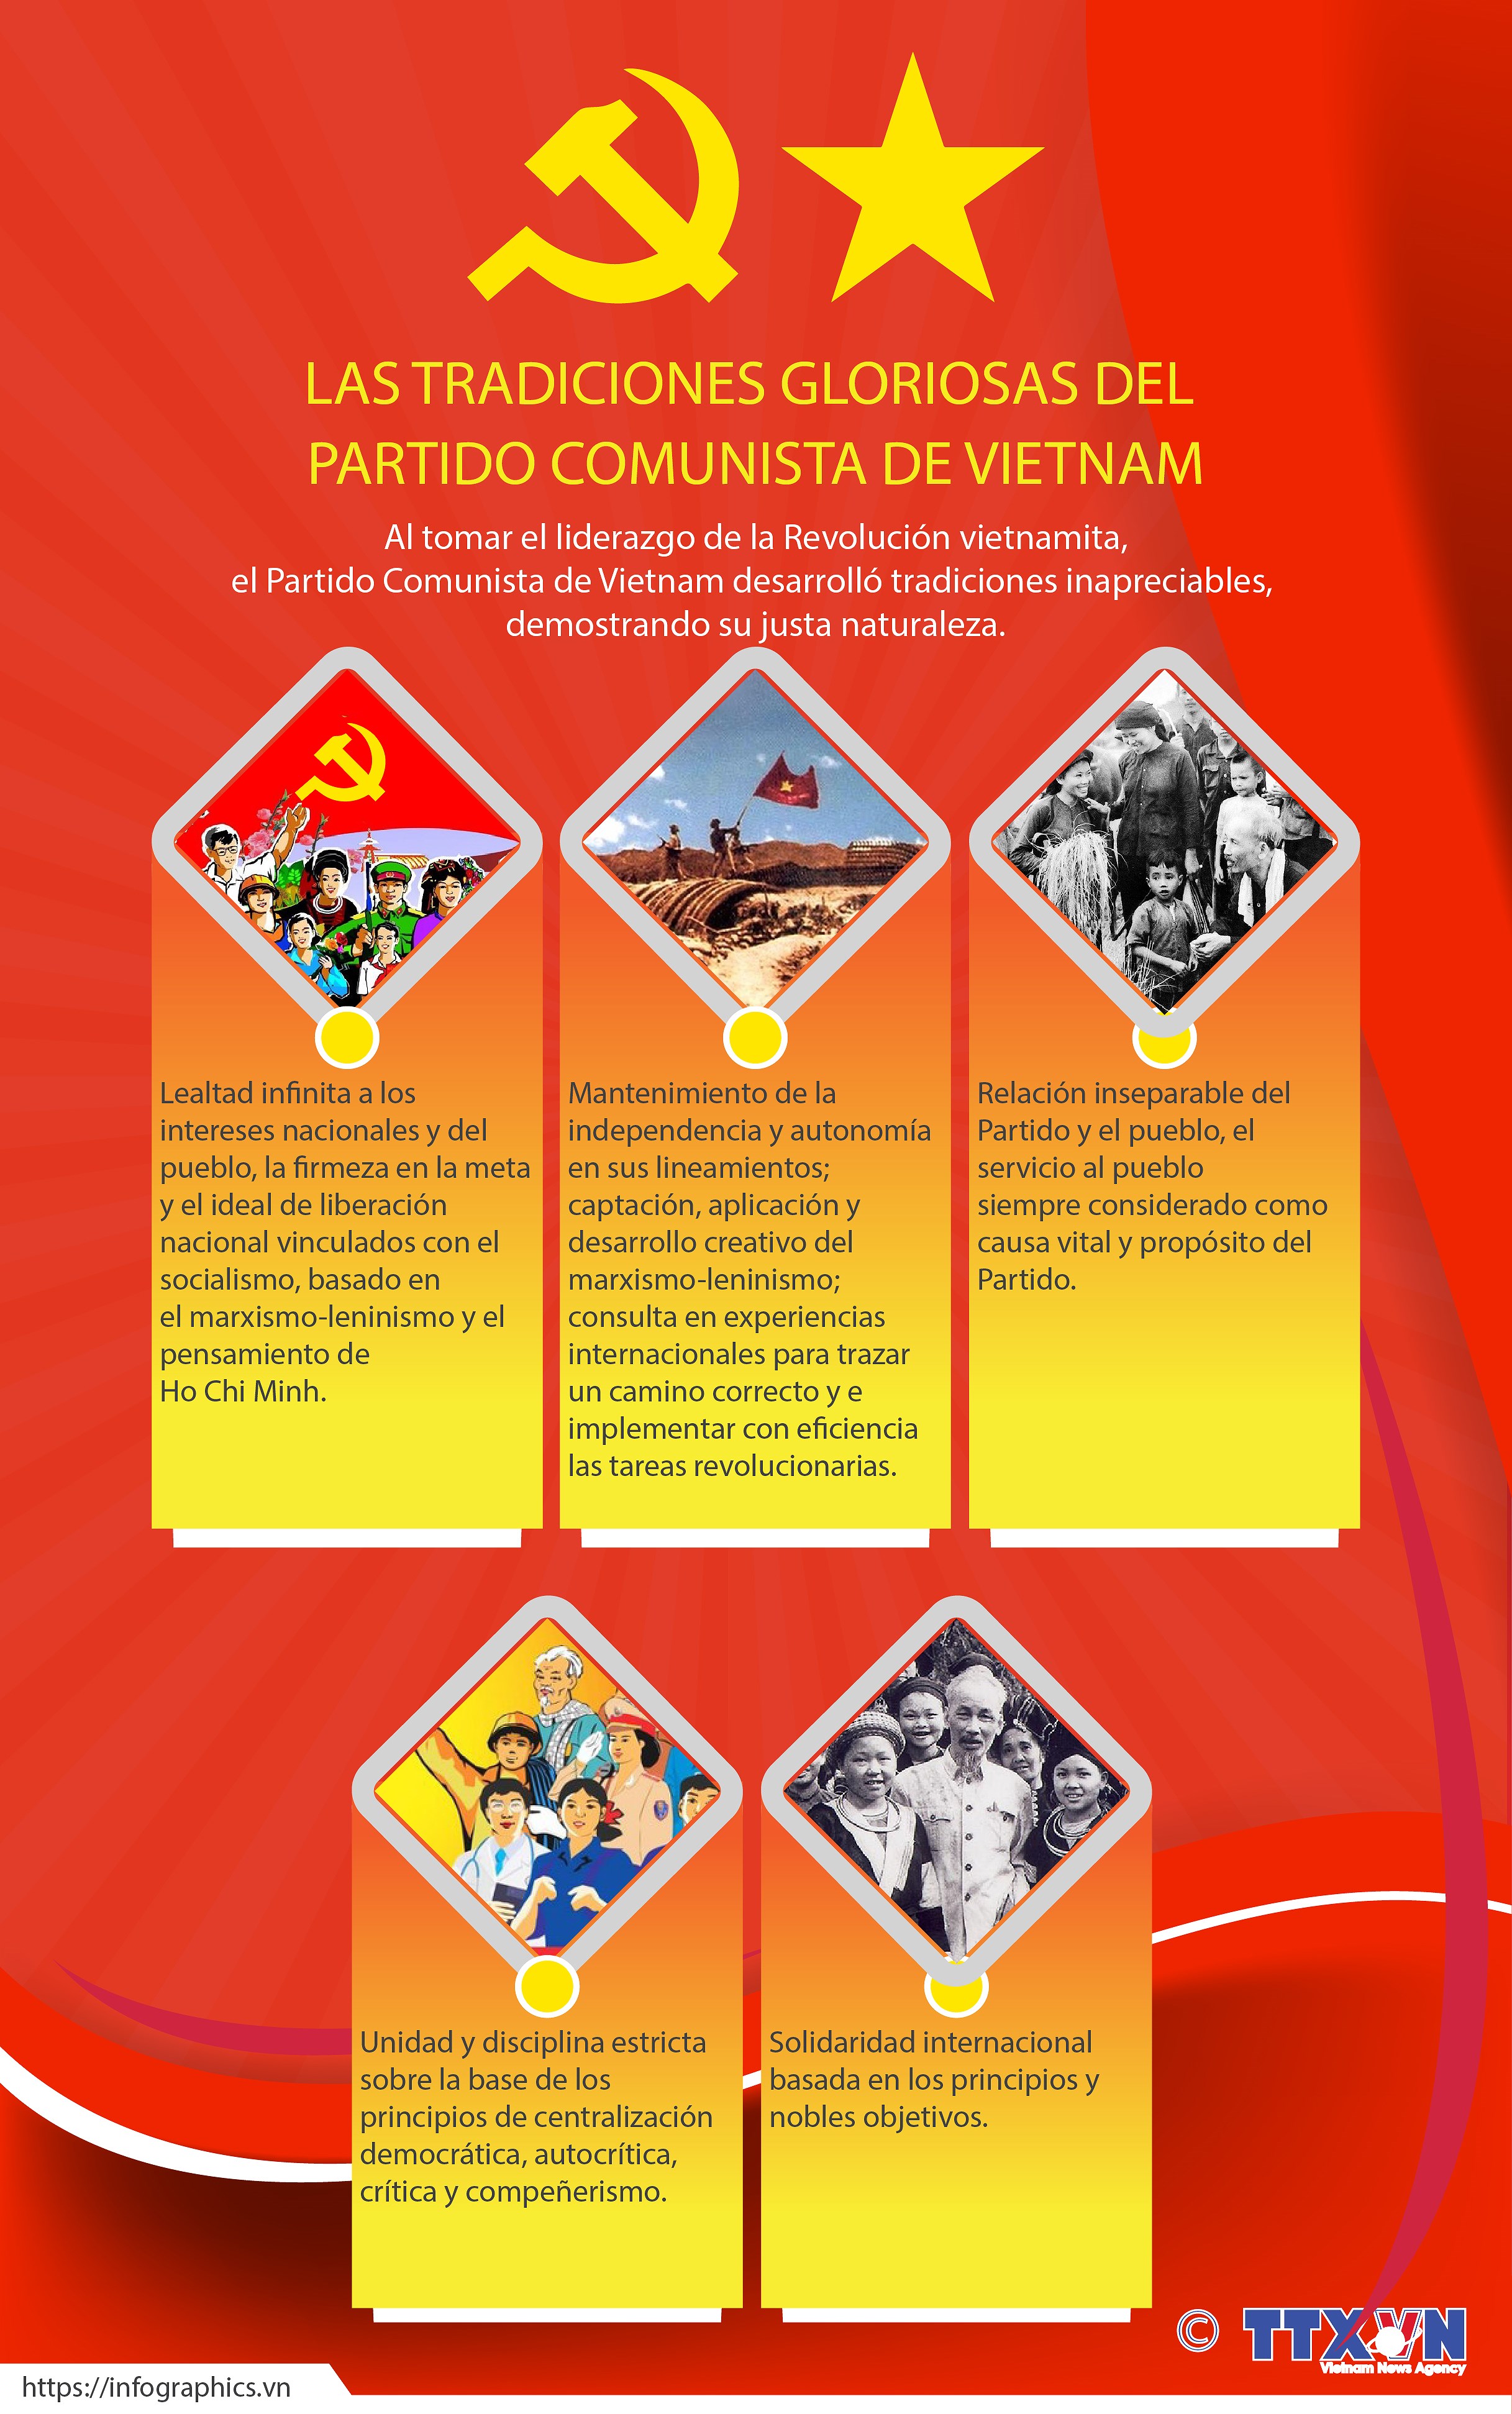 Las tradiciones gloriosas del Partido Comunista de Vietnam hinh anh 1